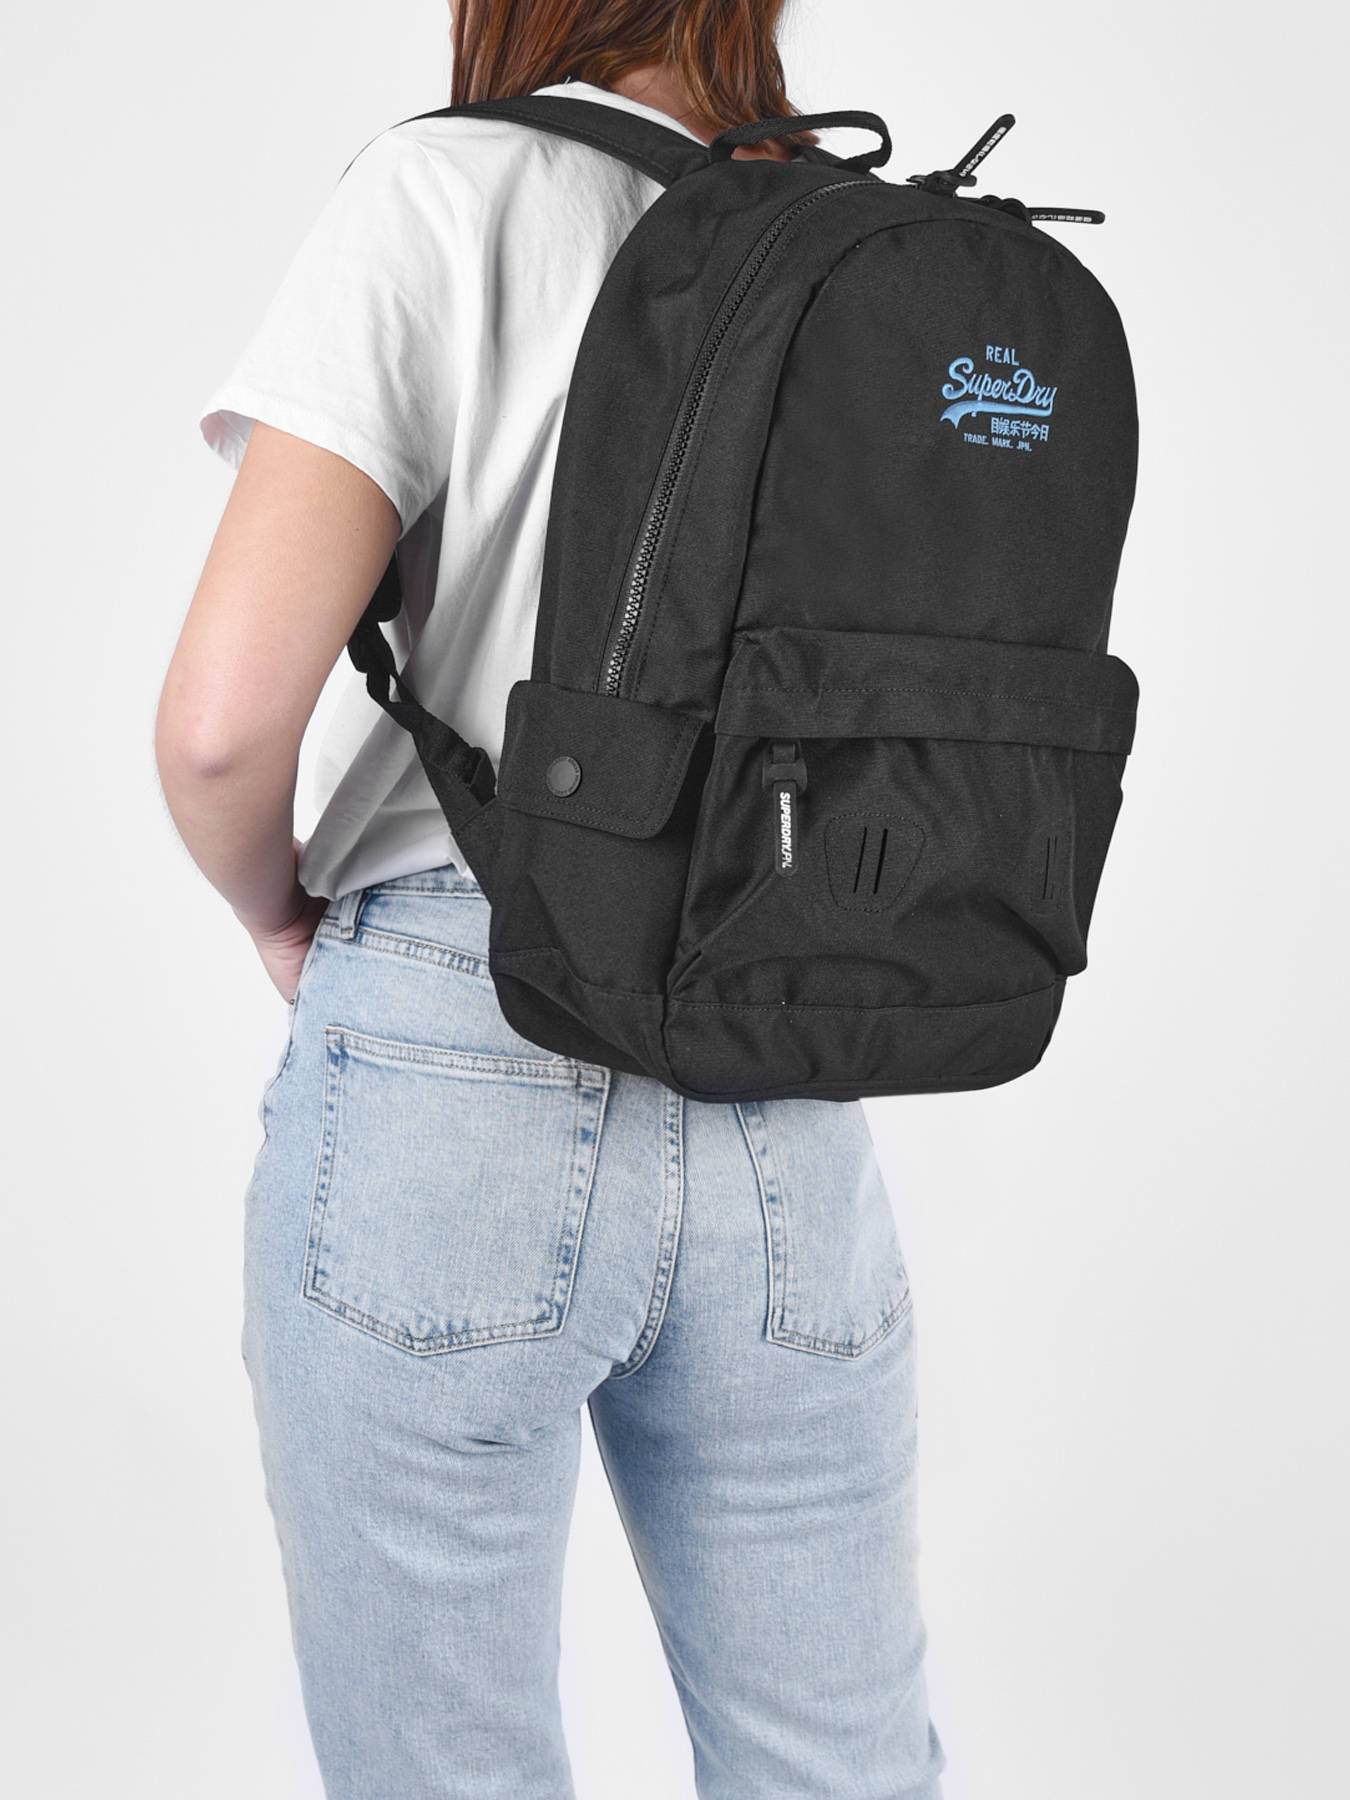 passie teer Verbazingwekkend Rugzak Superdry Backpack VINTAGE MONTANA te koop aan de beste prijs